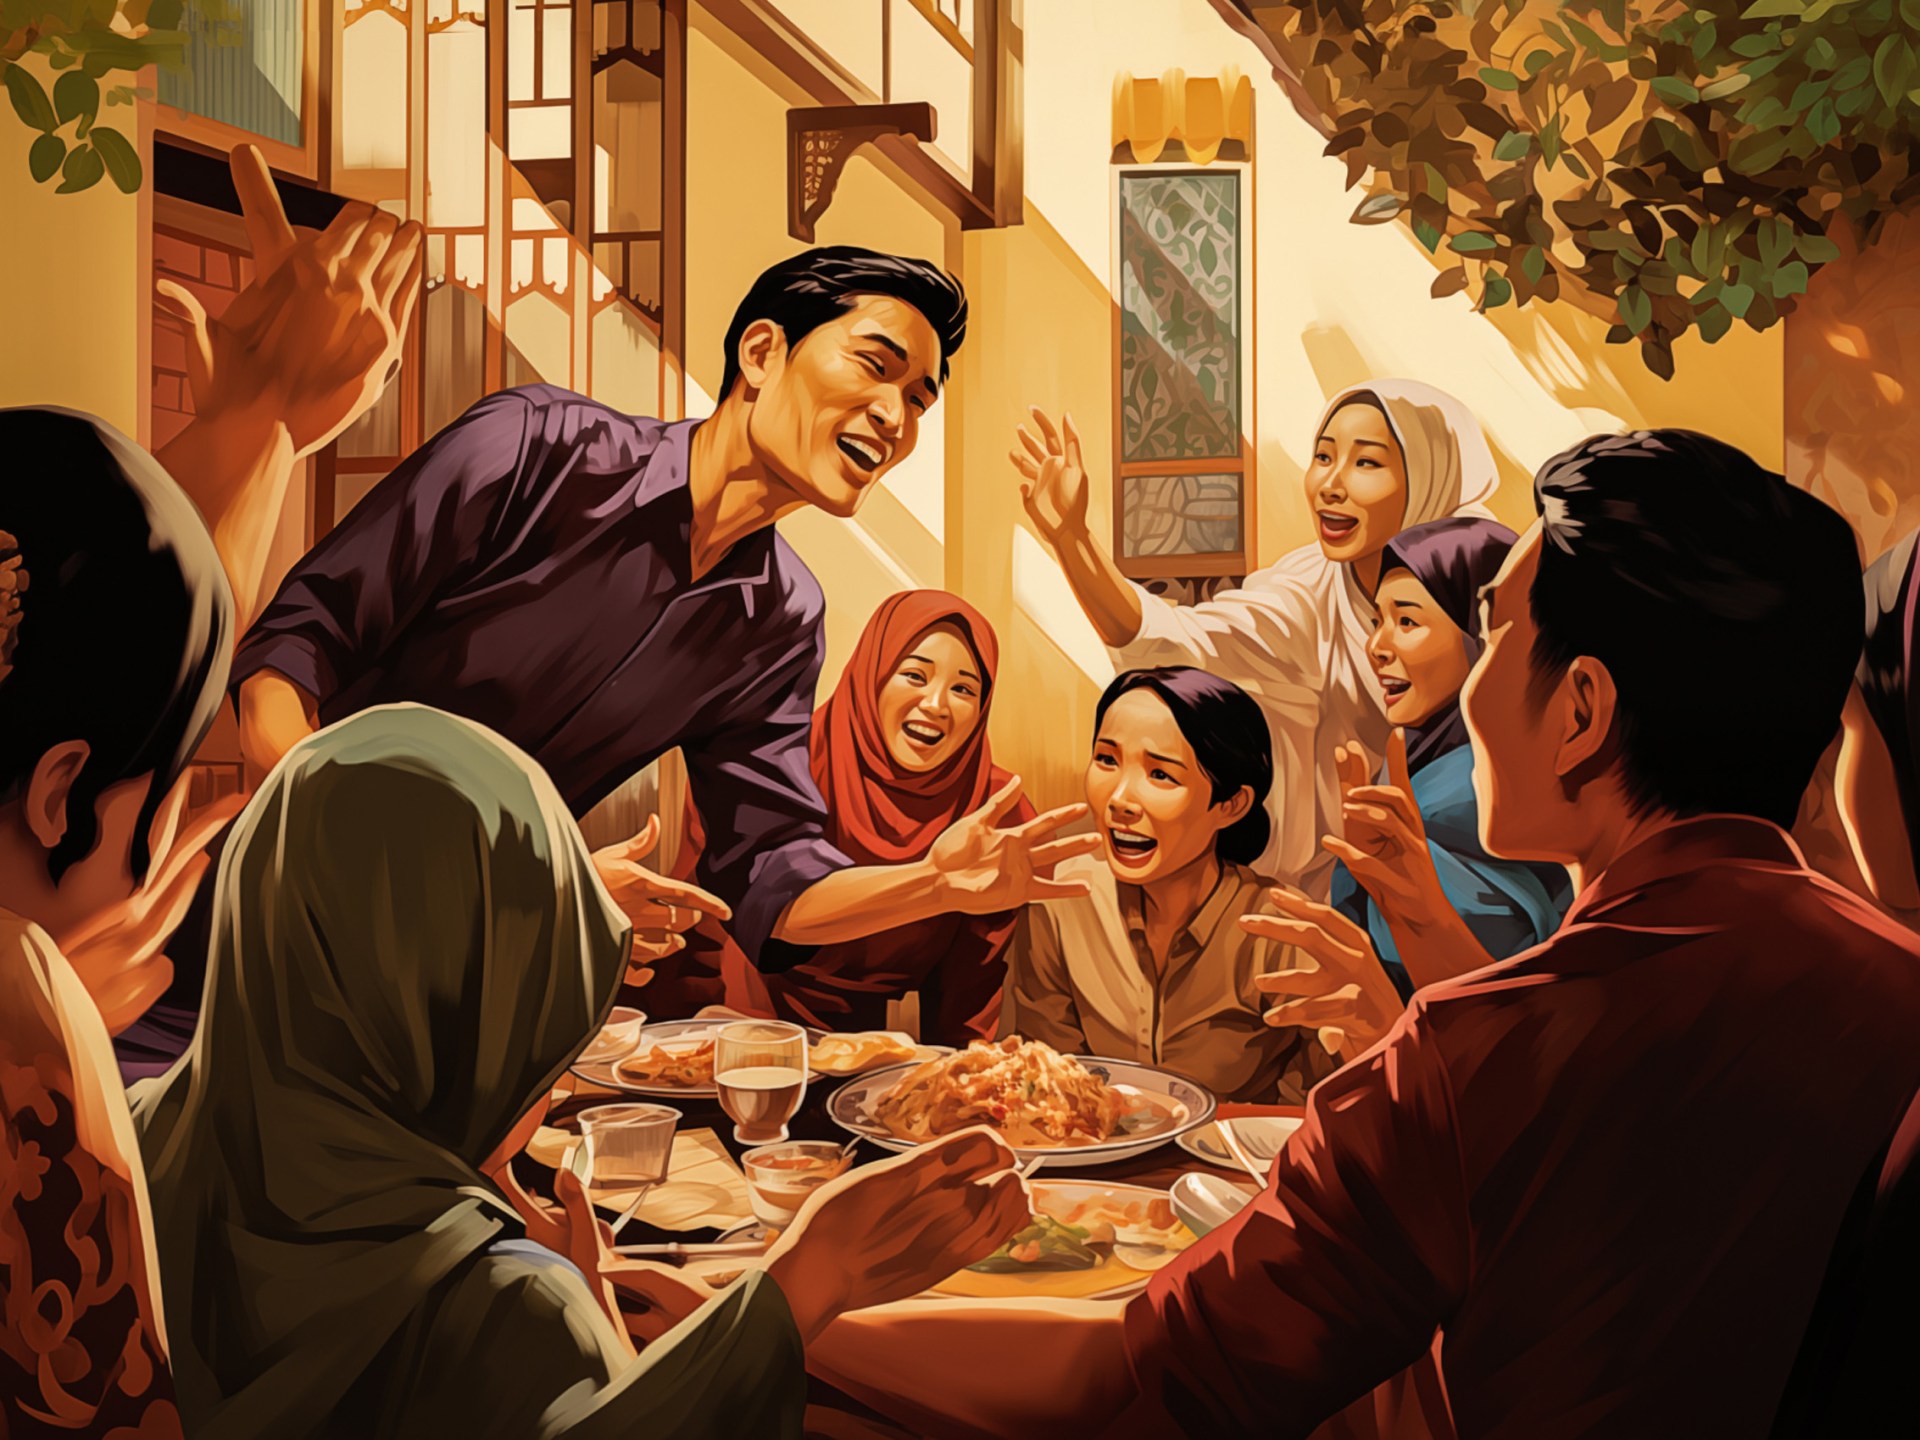 تايلند.. طهي الزوجات ليس للأزواج في رمضان | منوعات – البوكس نيوز